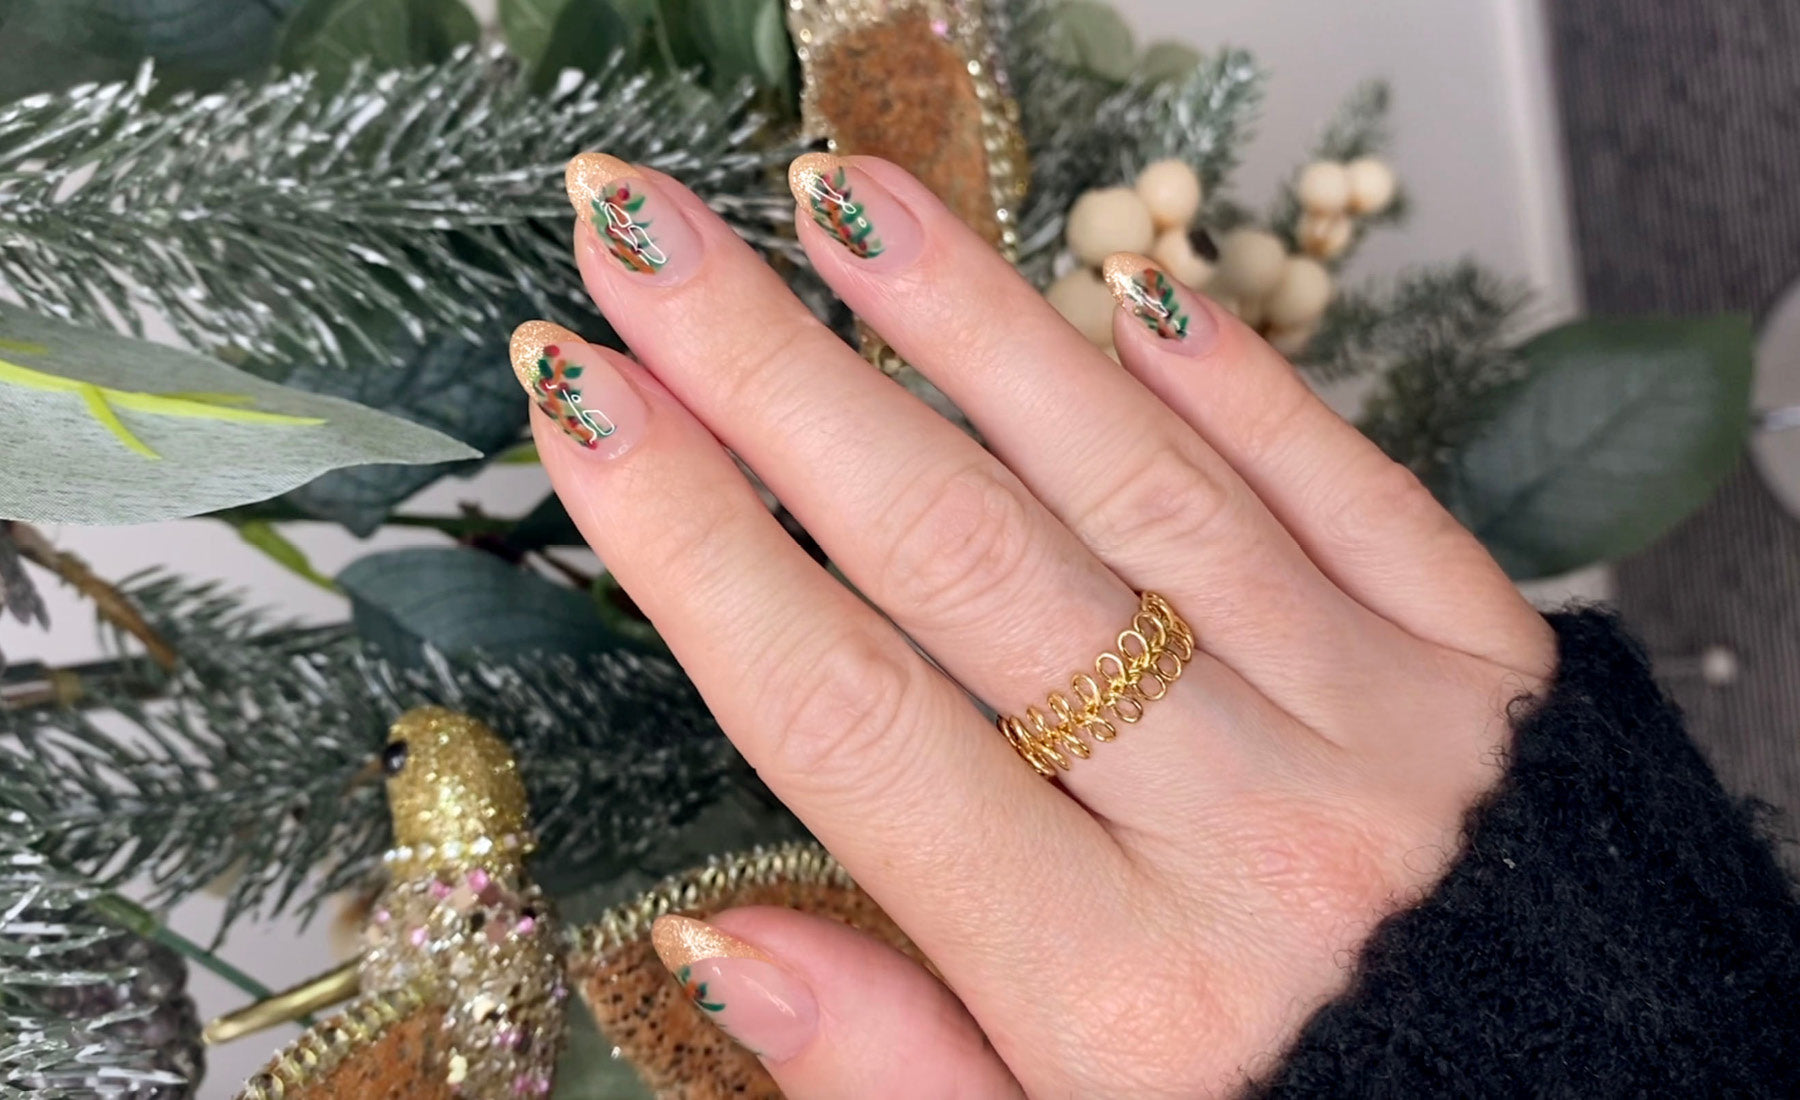 Glitter Tips Holly Gel Nail Art Design